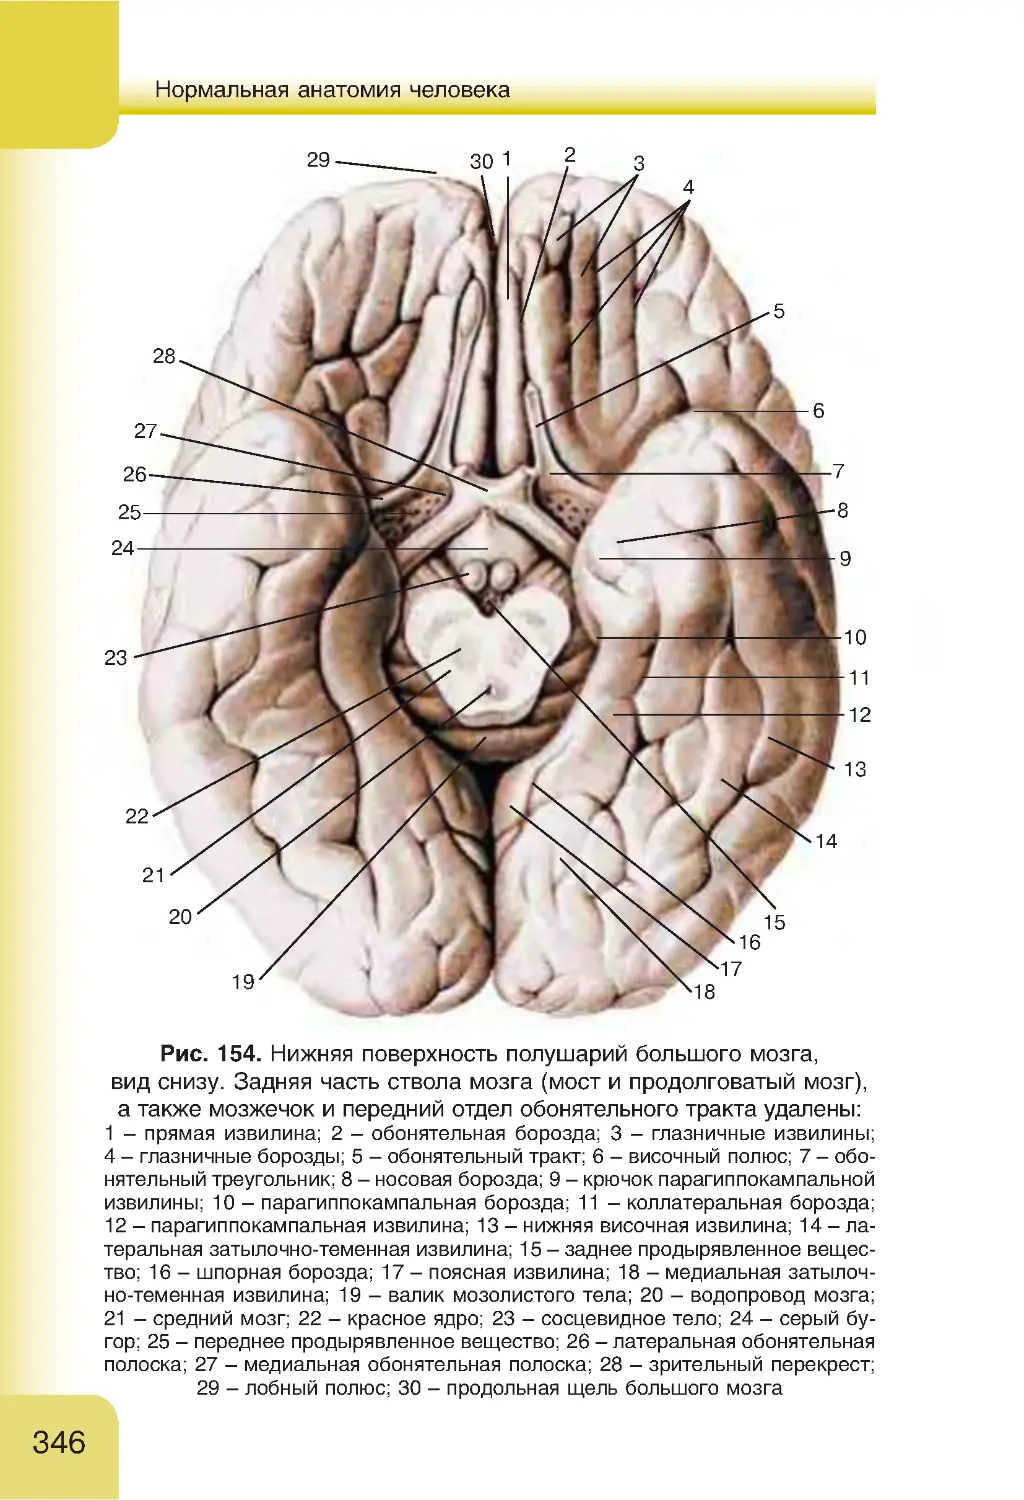 Складчатая поверхность головного мозга. Борозды и извилины головного мозга анатомия. Борозды и извилины нижней поверхности полушария. Борозды и извилины нижней поверхности полушария большого мозга. Нижняя поверхность конечного мозга анатомия.